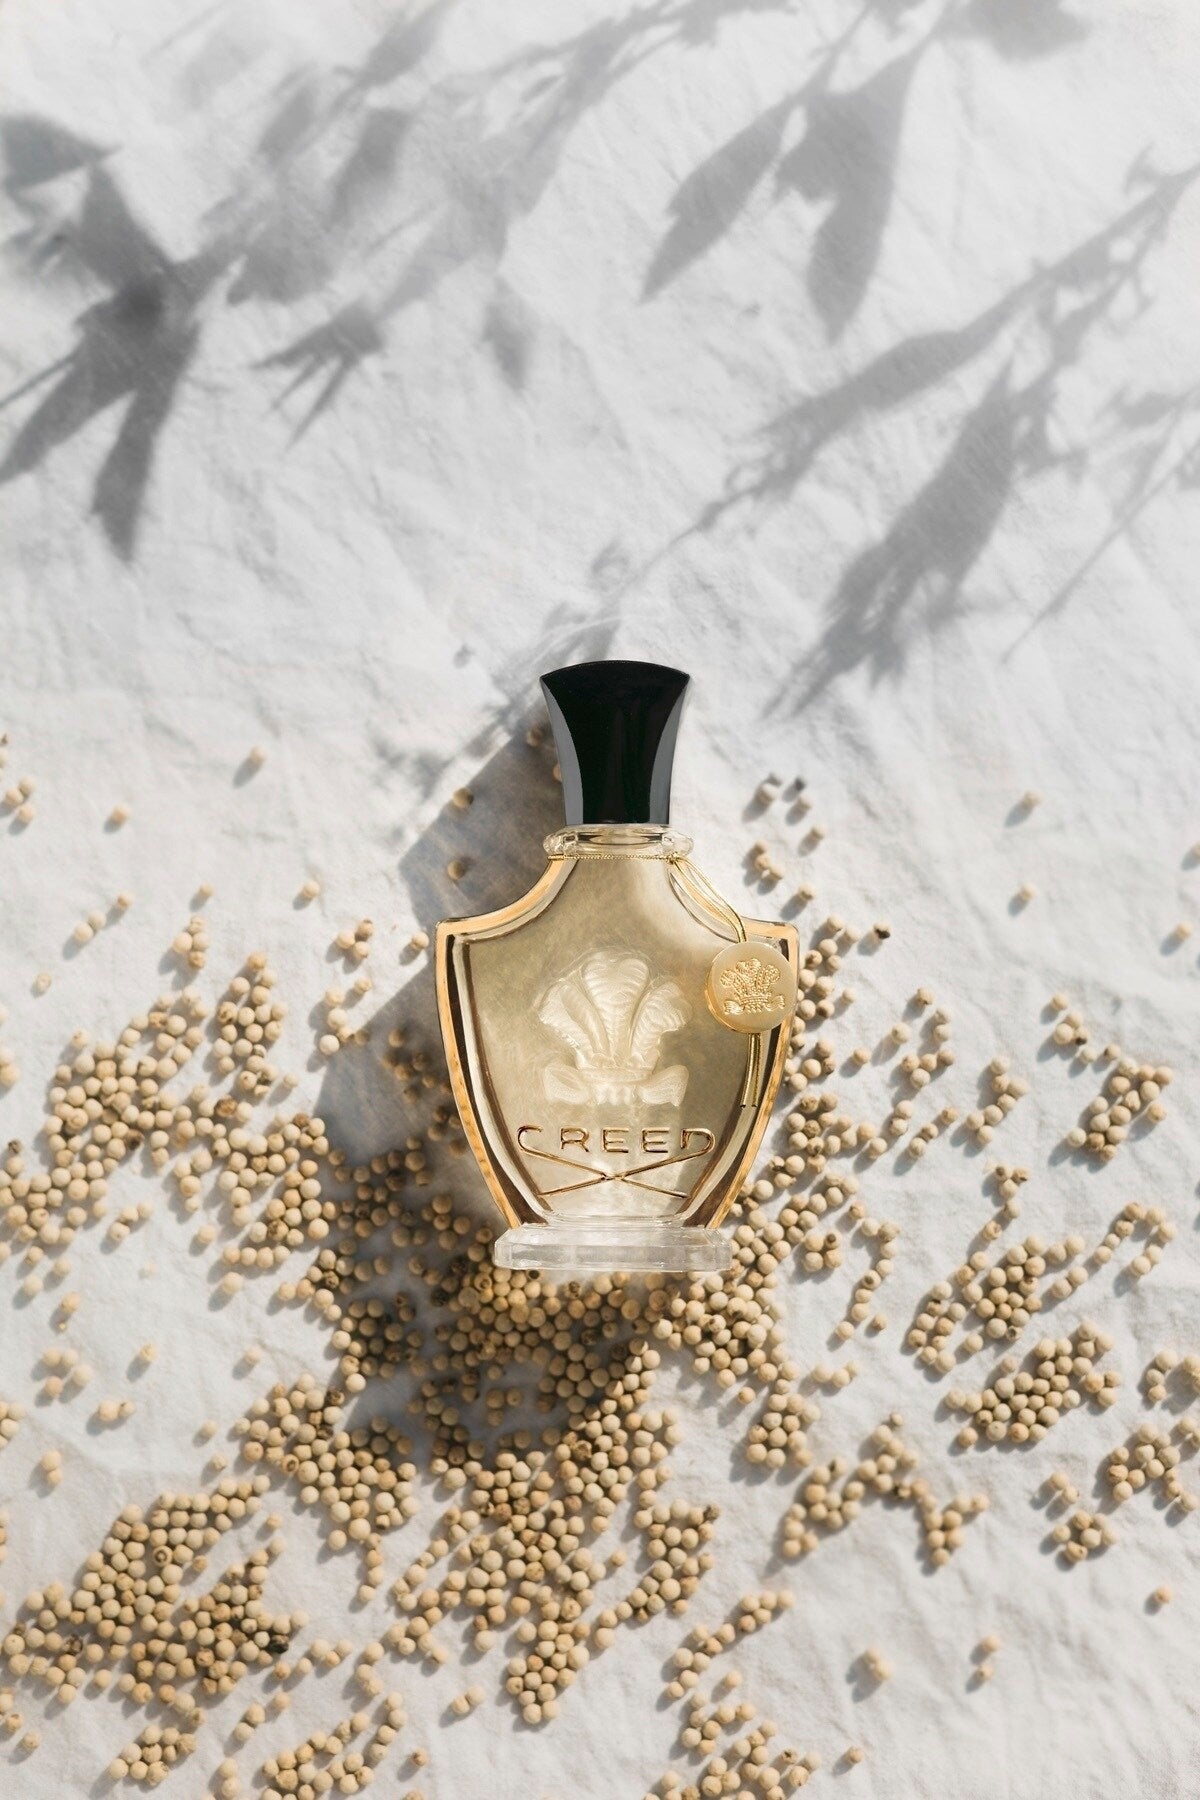 Creed ANGELIQUE ENCENS 2019 eau de parfum - F Vault